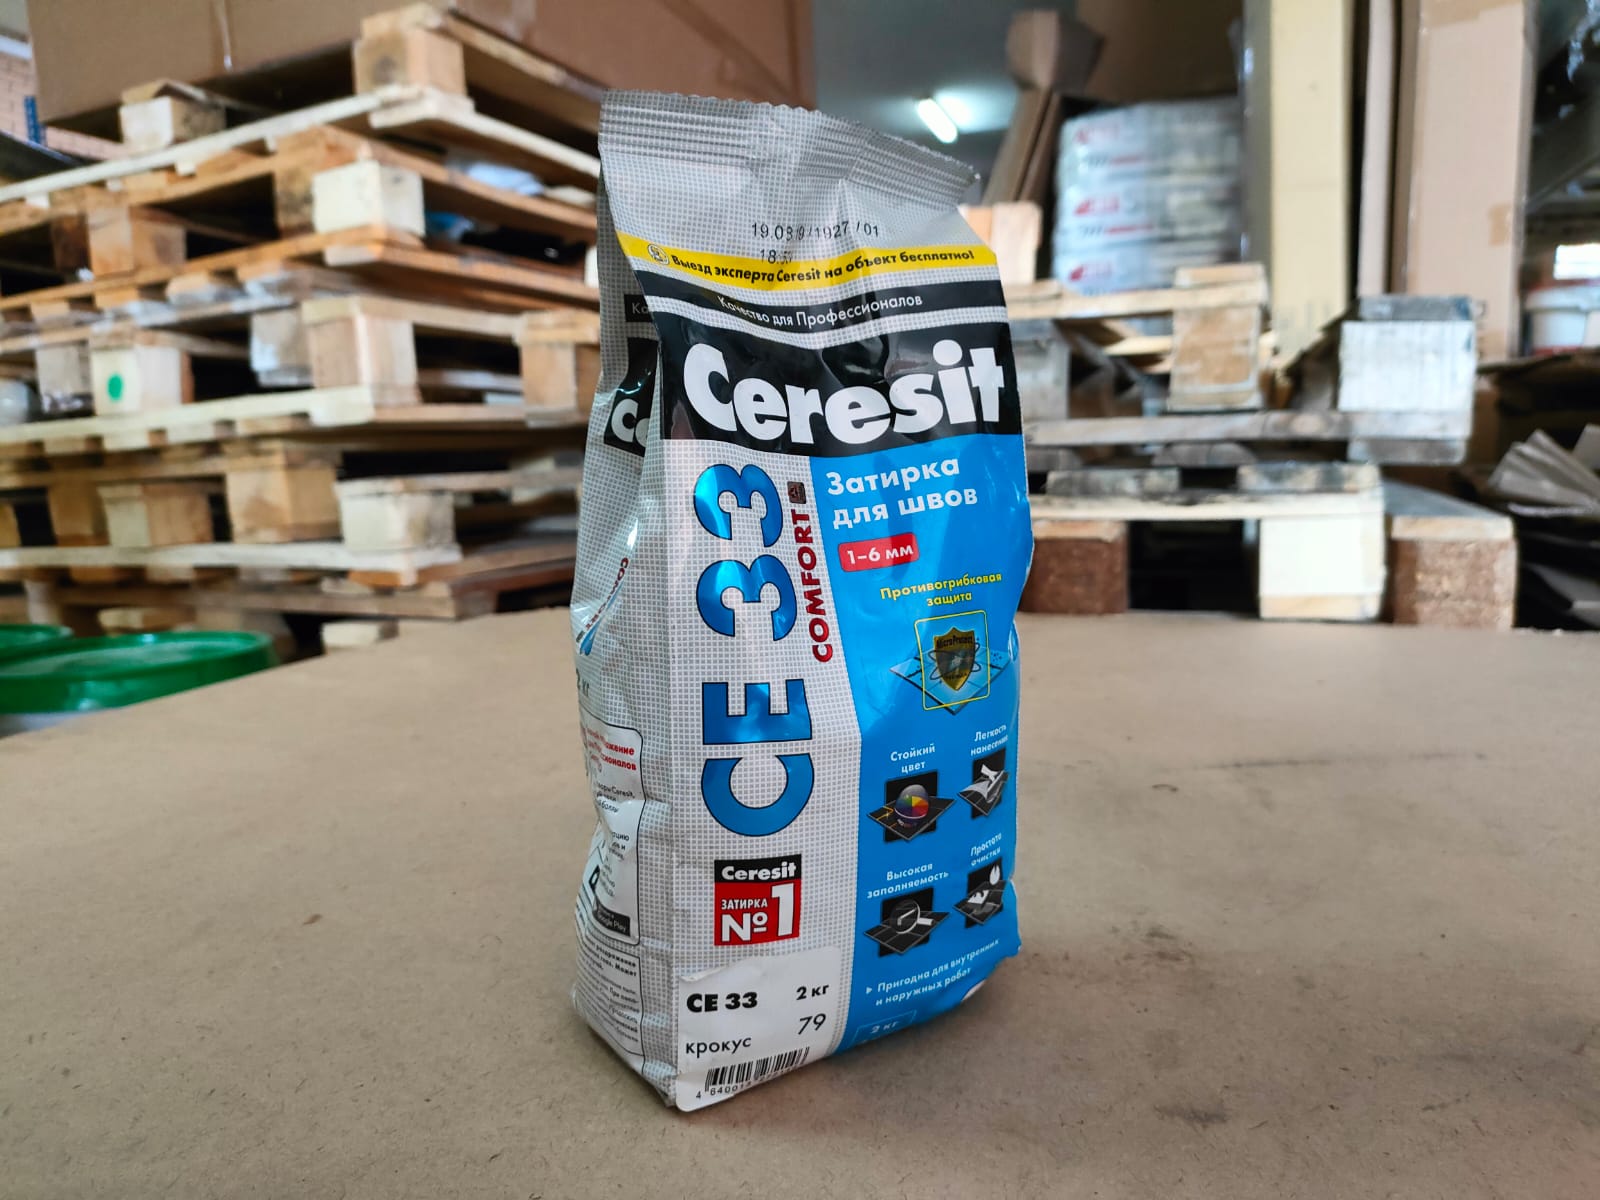 Затирка для узких швов Ceresit CE 33 Comfort, ширина шва 2-6 мм, 2 кг, цвет крокус ДИСКОНТ								